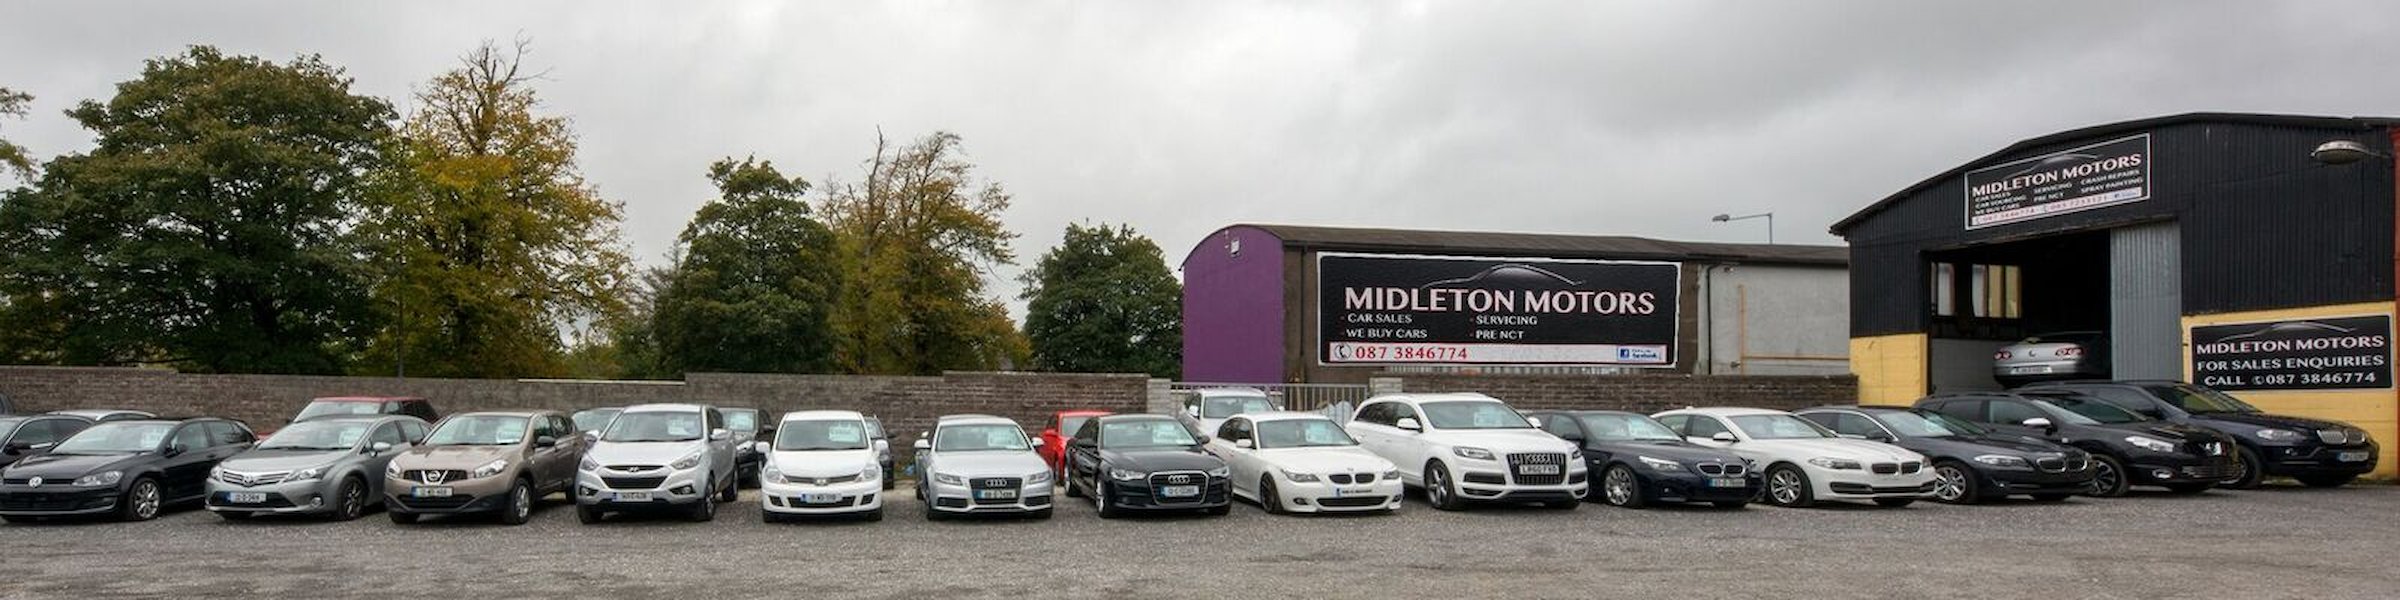 Midleton Motors